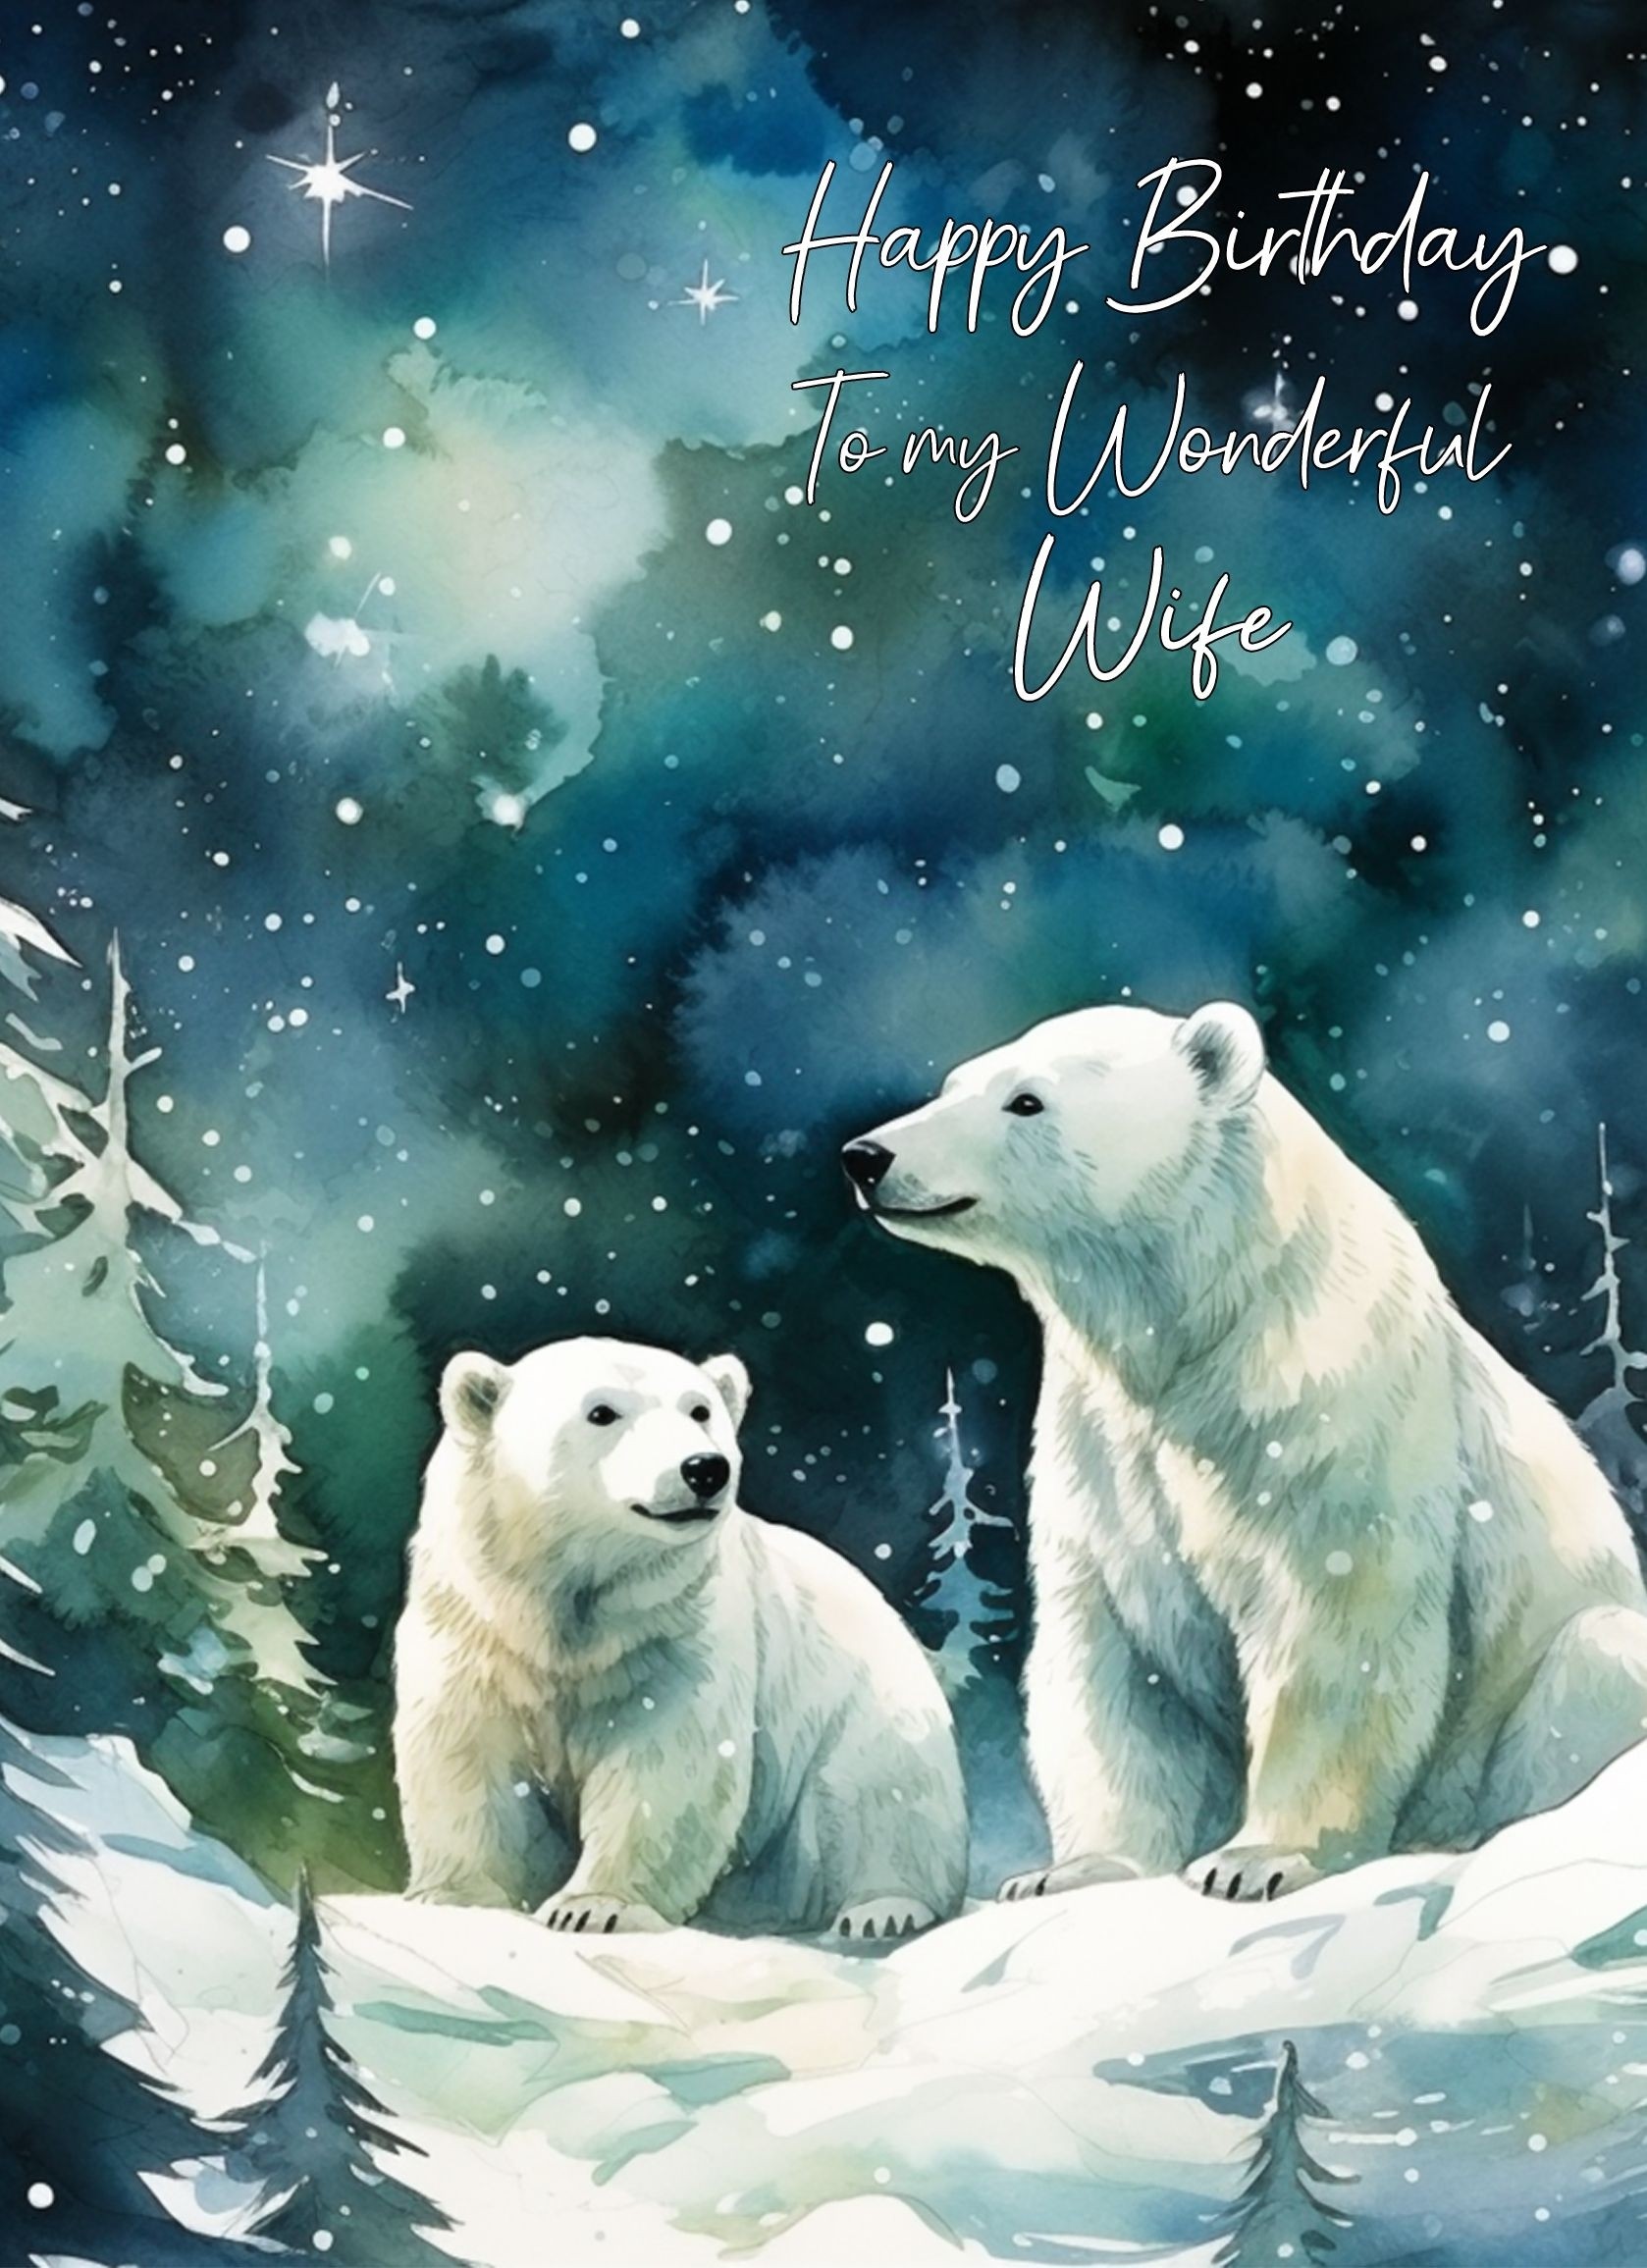 Polar Bear Art Birthday Card For Wife (Design 4)